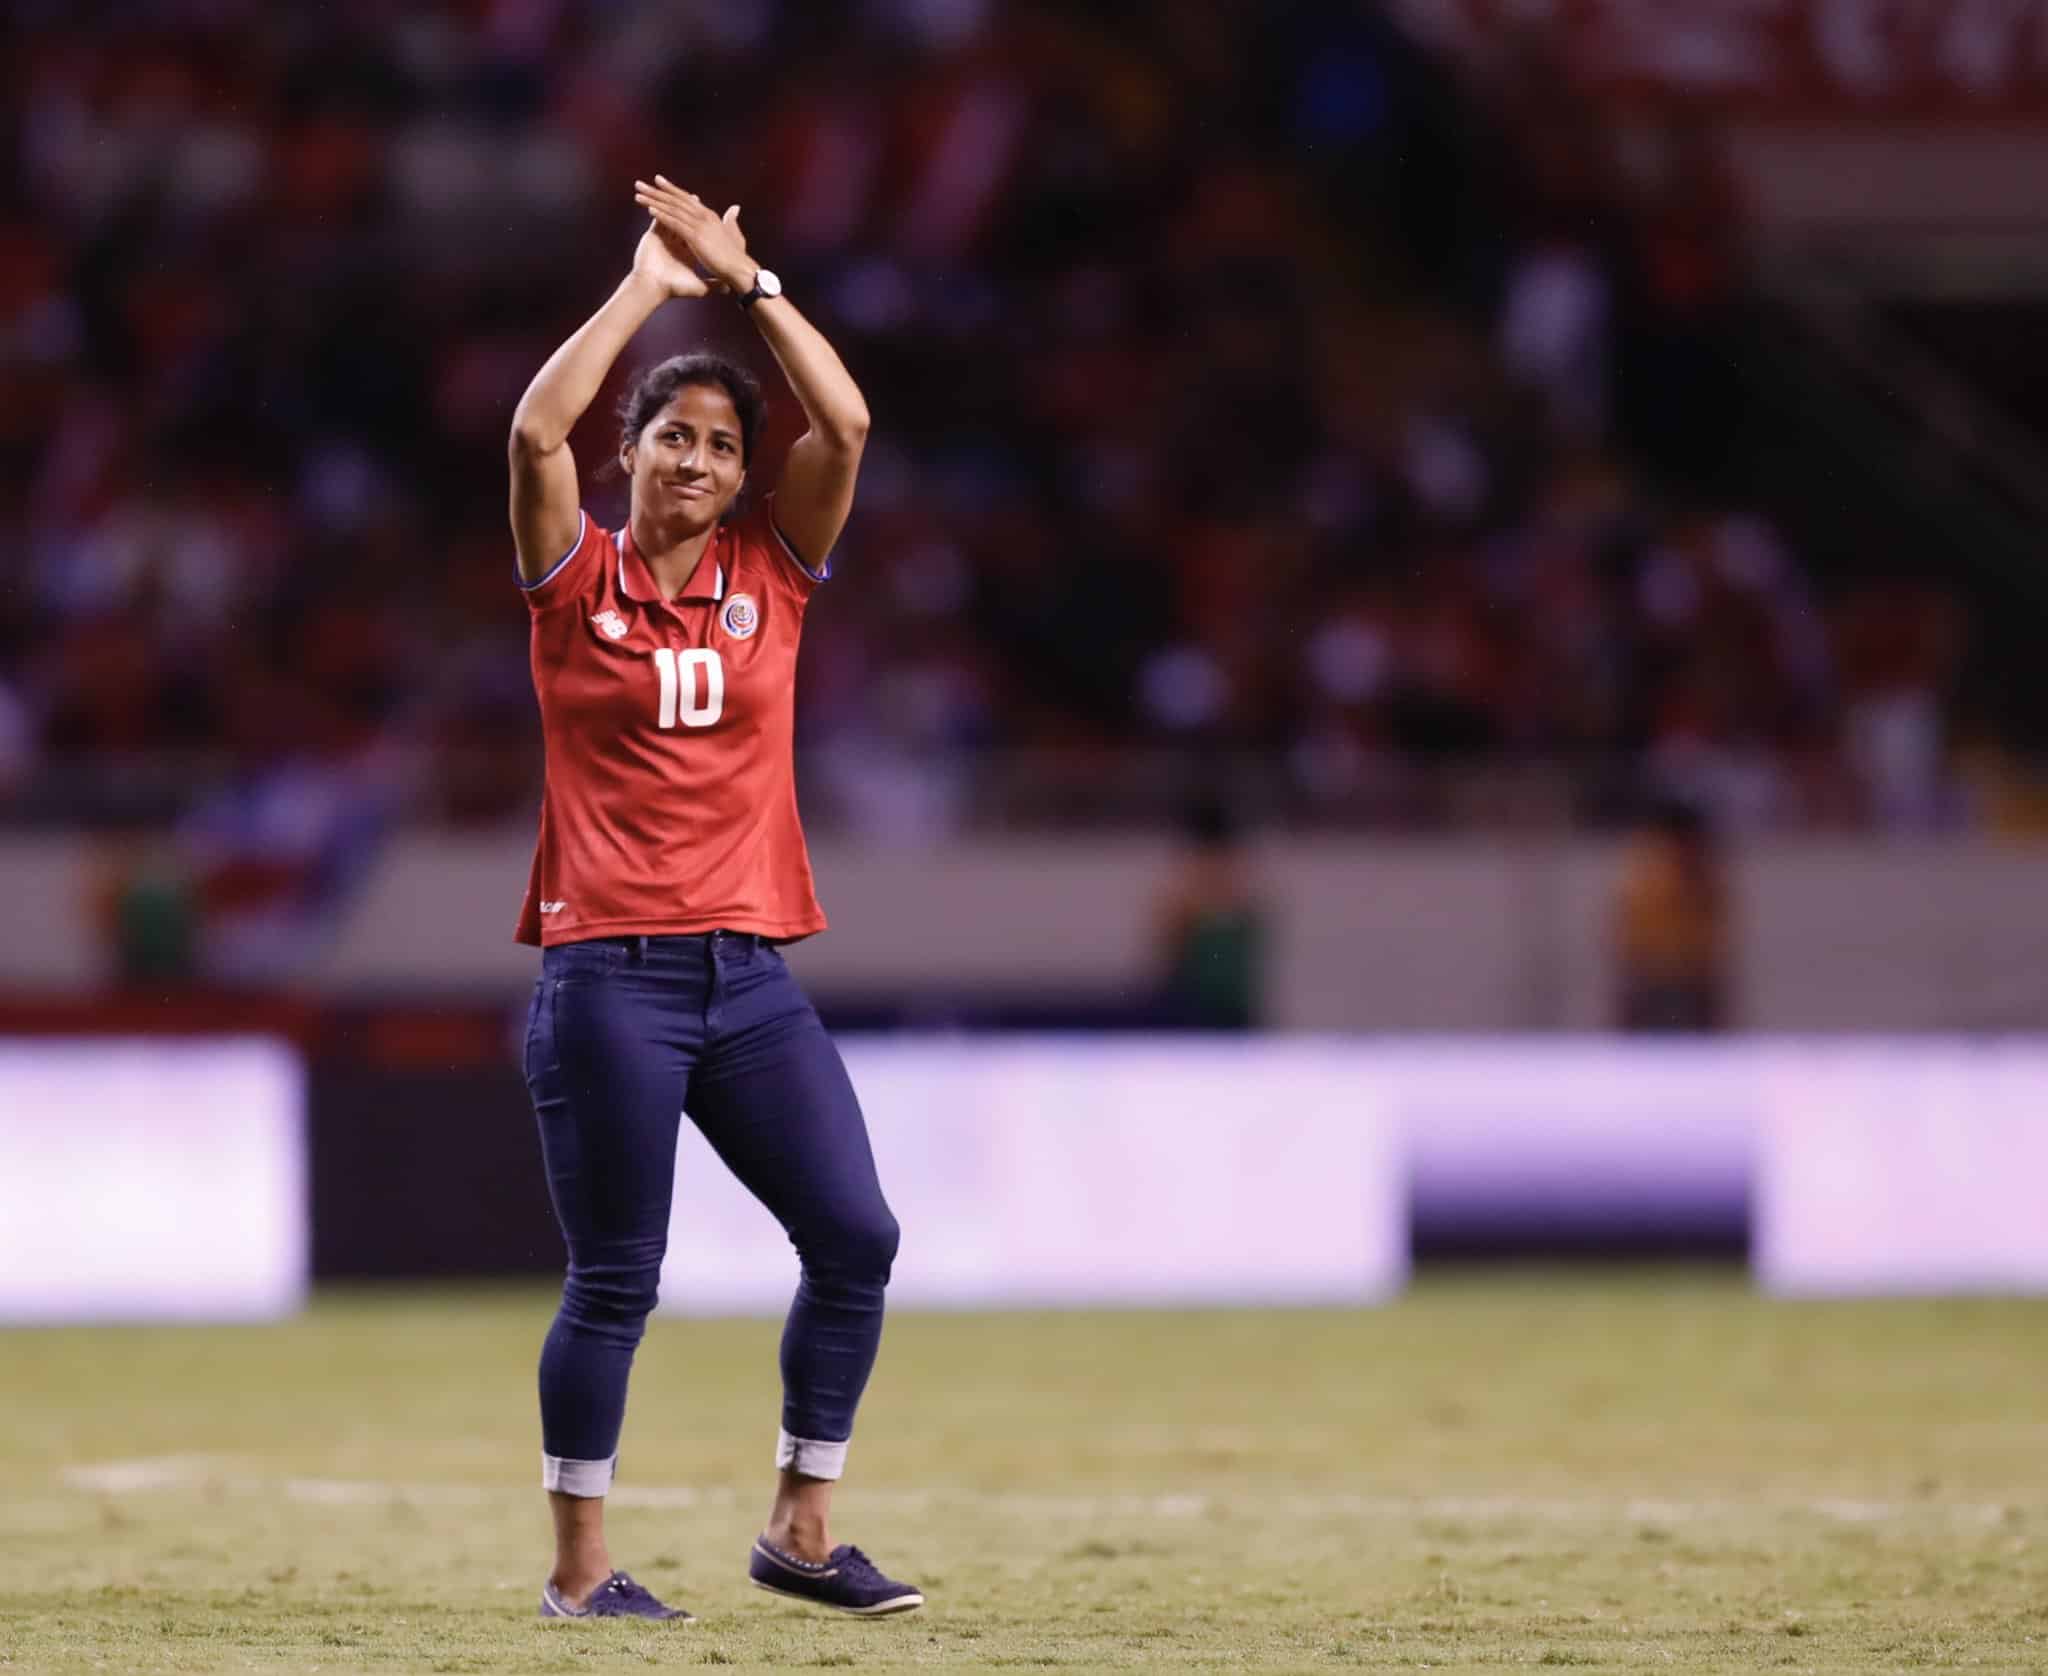 Shirley Cruz confirma que no irá al Mundial: “no tendré la oportunidad digna de luchar por un cupo”